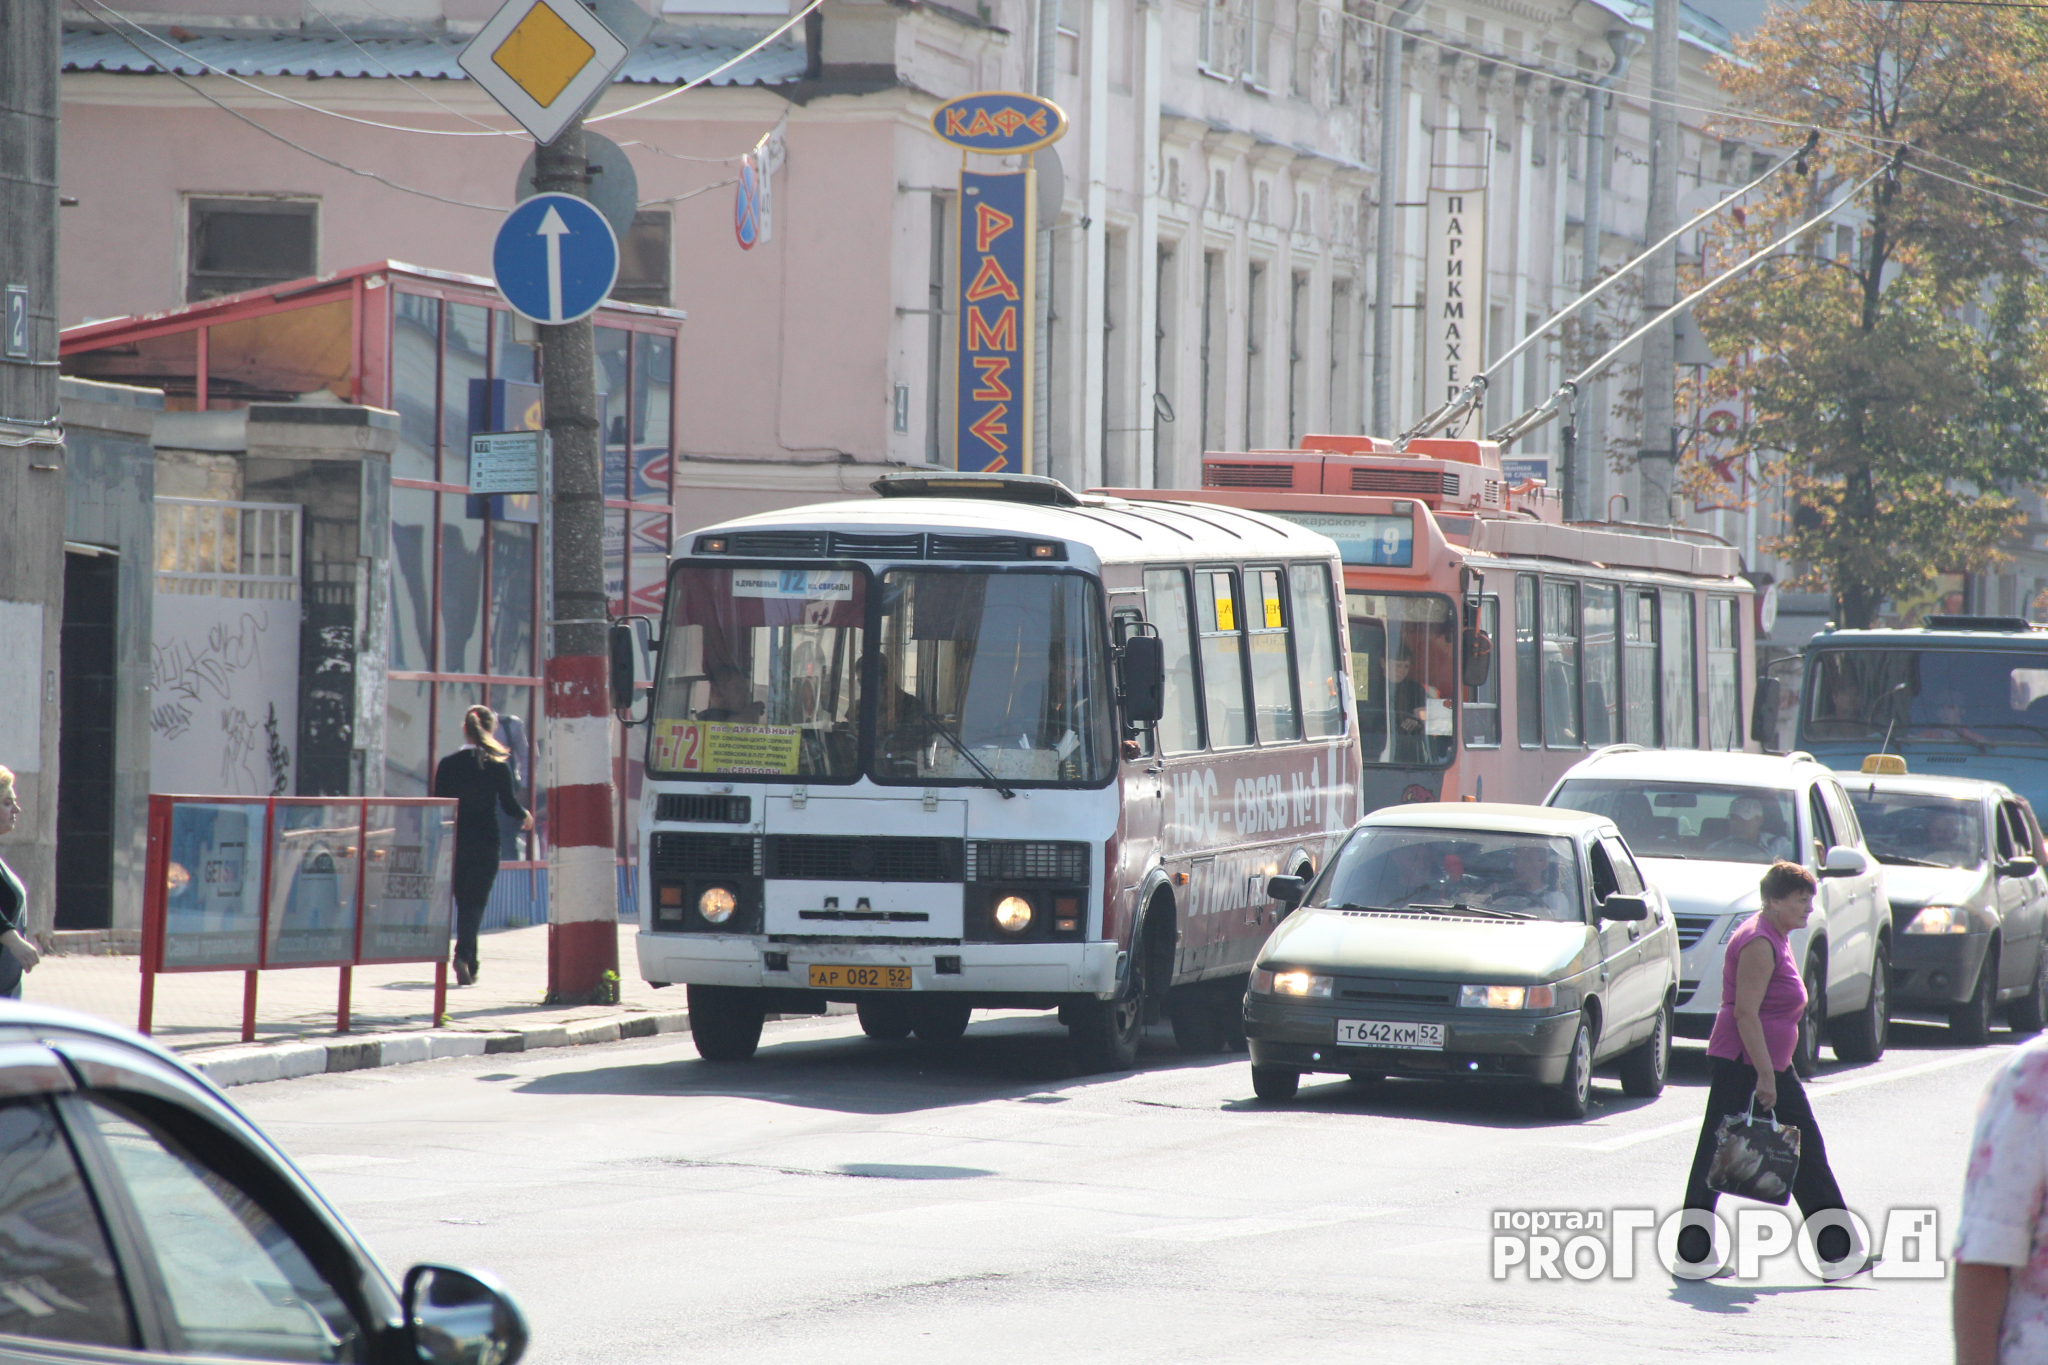 50 автобусов изменят схему движения из-за игры на стадионе "Нижний Новгород"